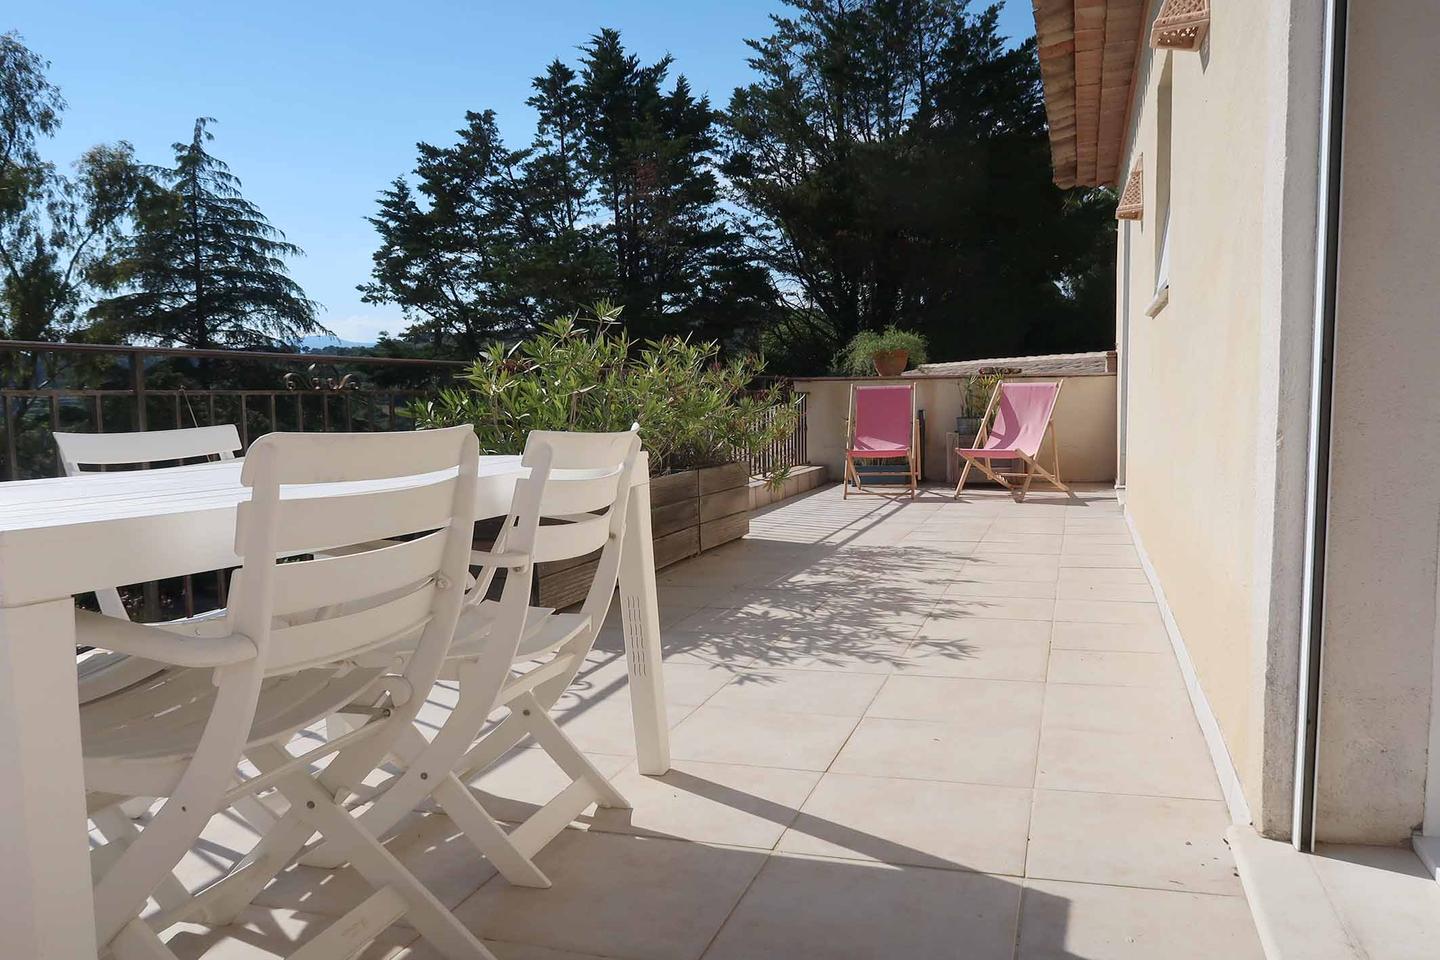 Hôte GreenGo: Ciel d'Azur, mer et nature (haut de villa plein ciel - jardin privé plein pied) - Image 2